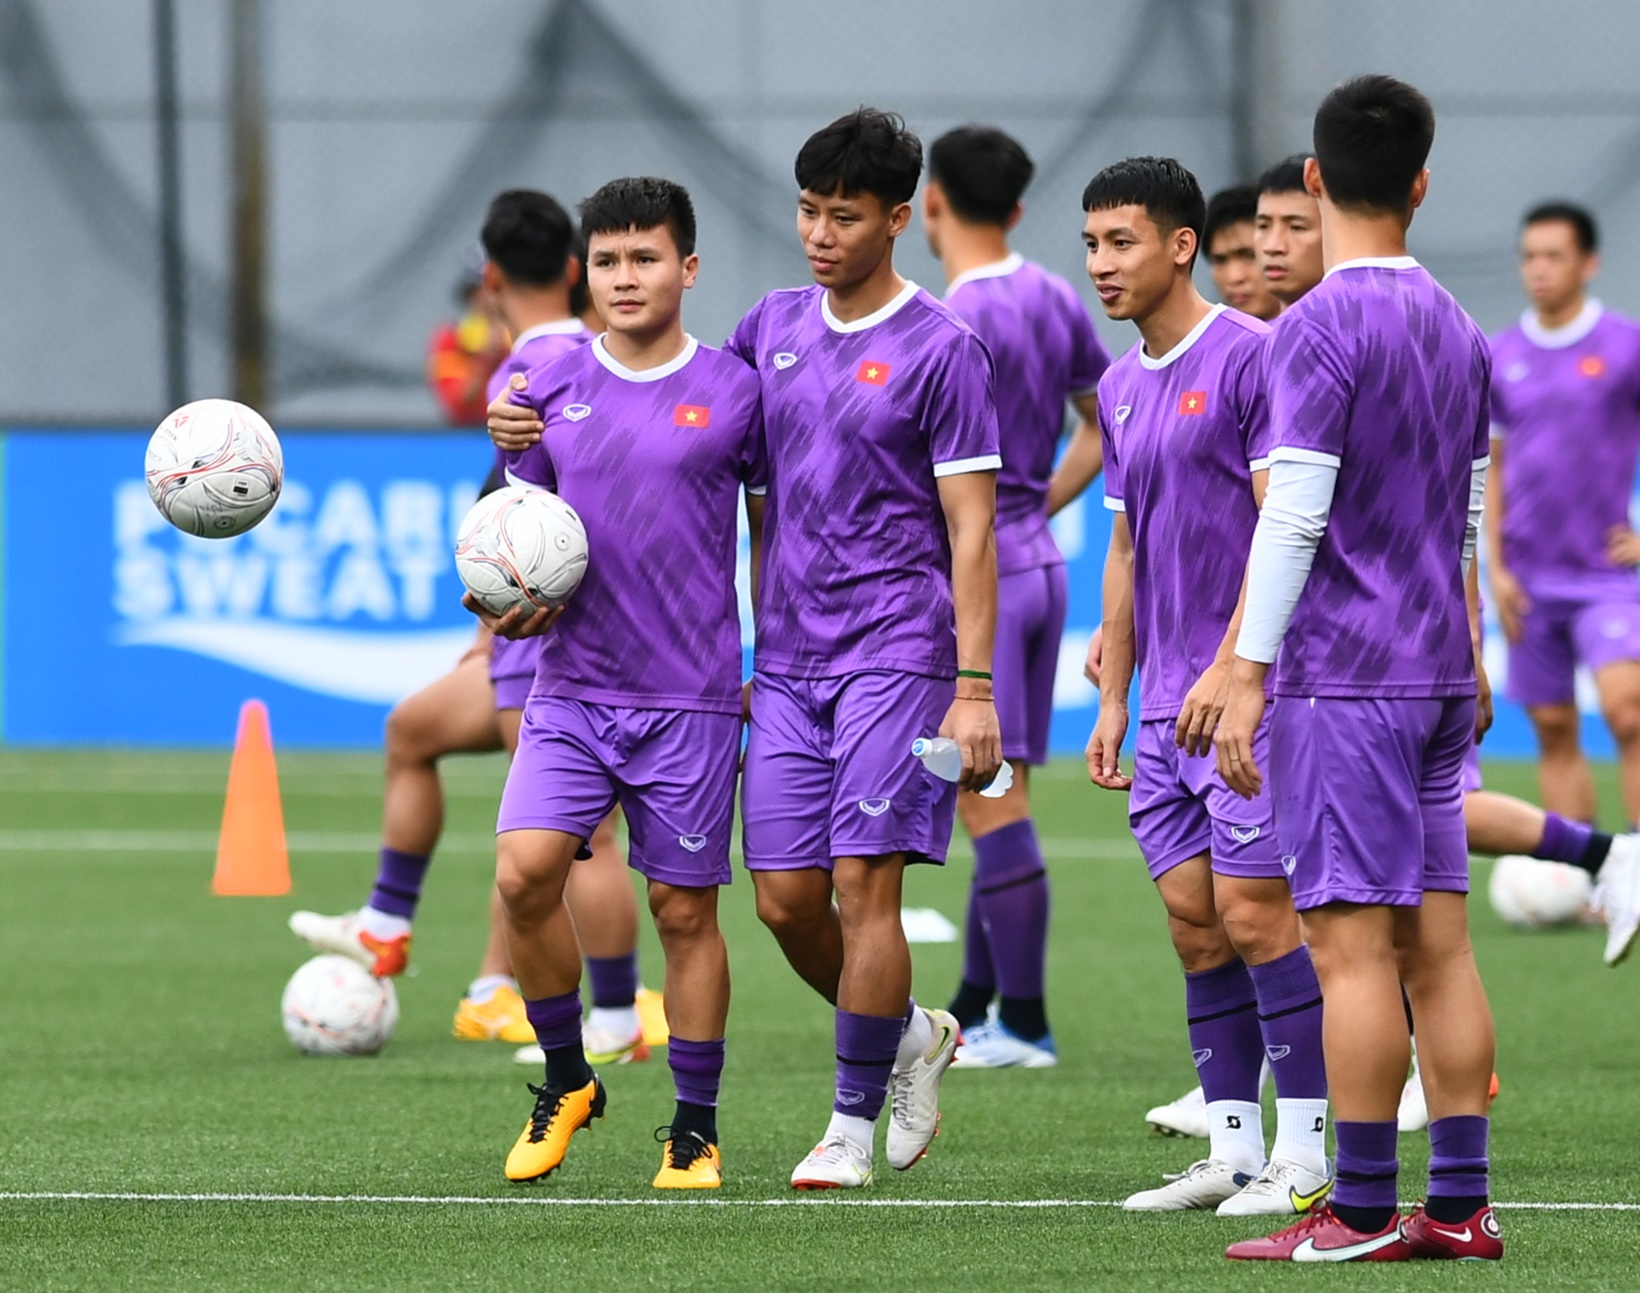 HLV Park Hang-seo quan tâm đặc biệt đến giày thi đấu, ĐT Việt Nam thích nghi với mặt cỏ nhân tạo - Ảnh 7.